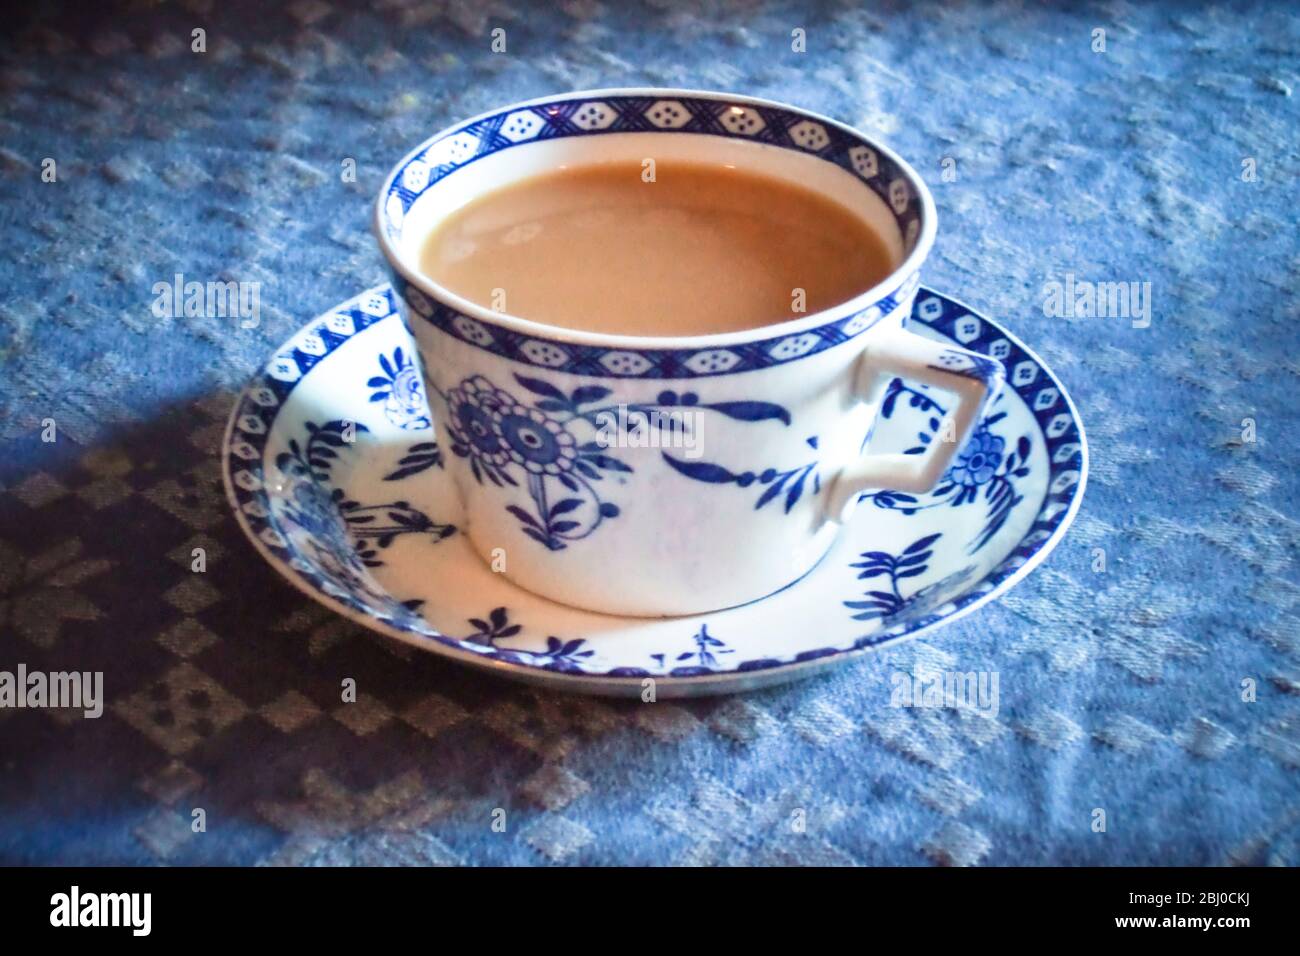 Antik blau und weiß Tasse und Untertasse von indischen Tee mit Milch, auf blauer Tischdecke - Stockfoto